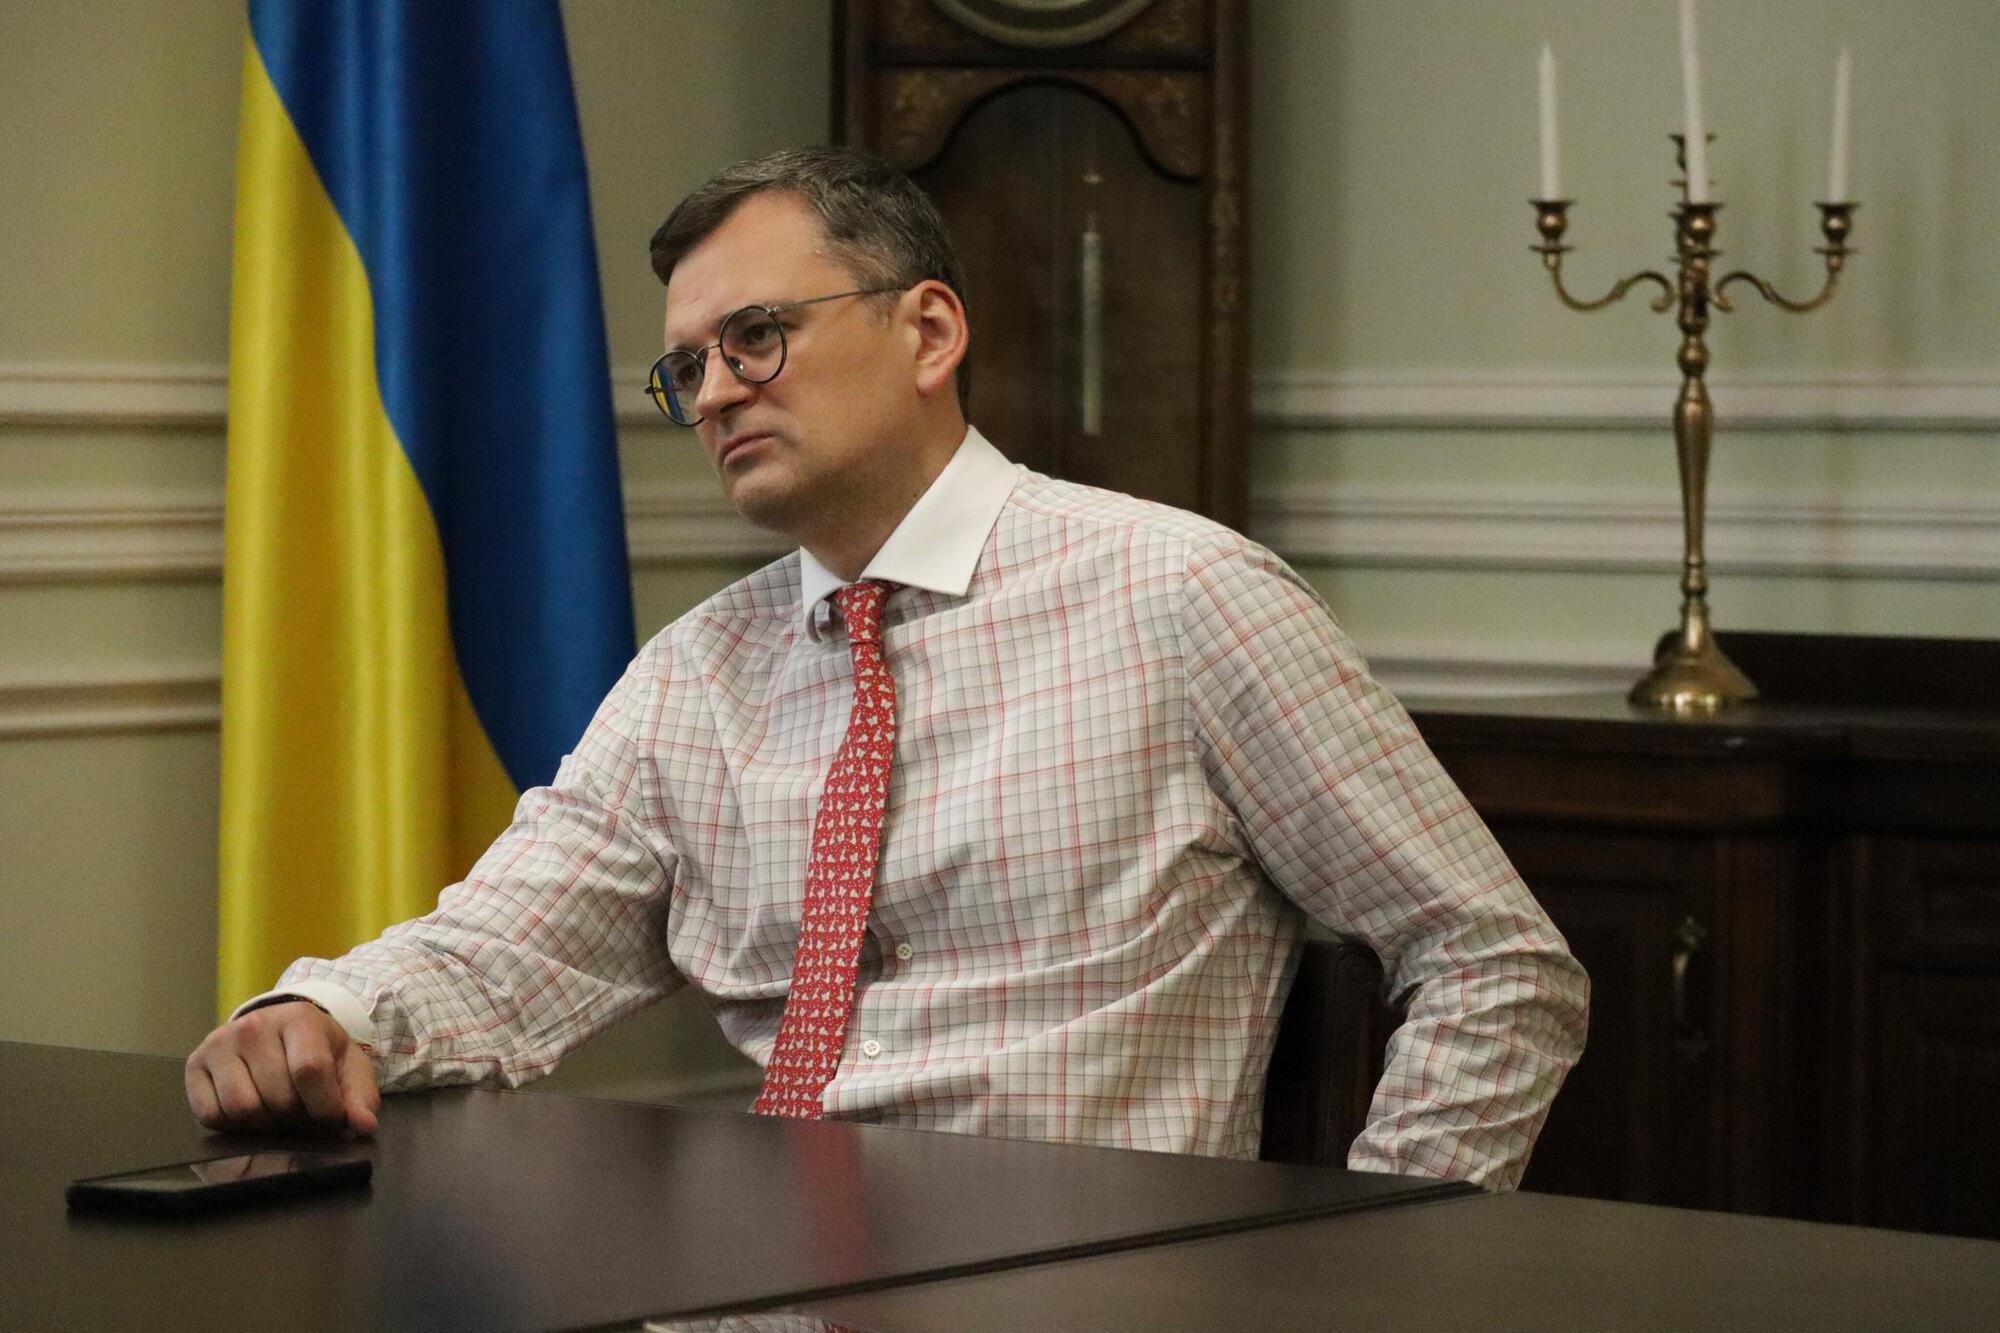 Бажання, щоб Україна перемогла, є загальноприйнятим: питання в тому, що буде українською перемогою. Інтерв’ю з Кулебою

